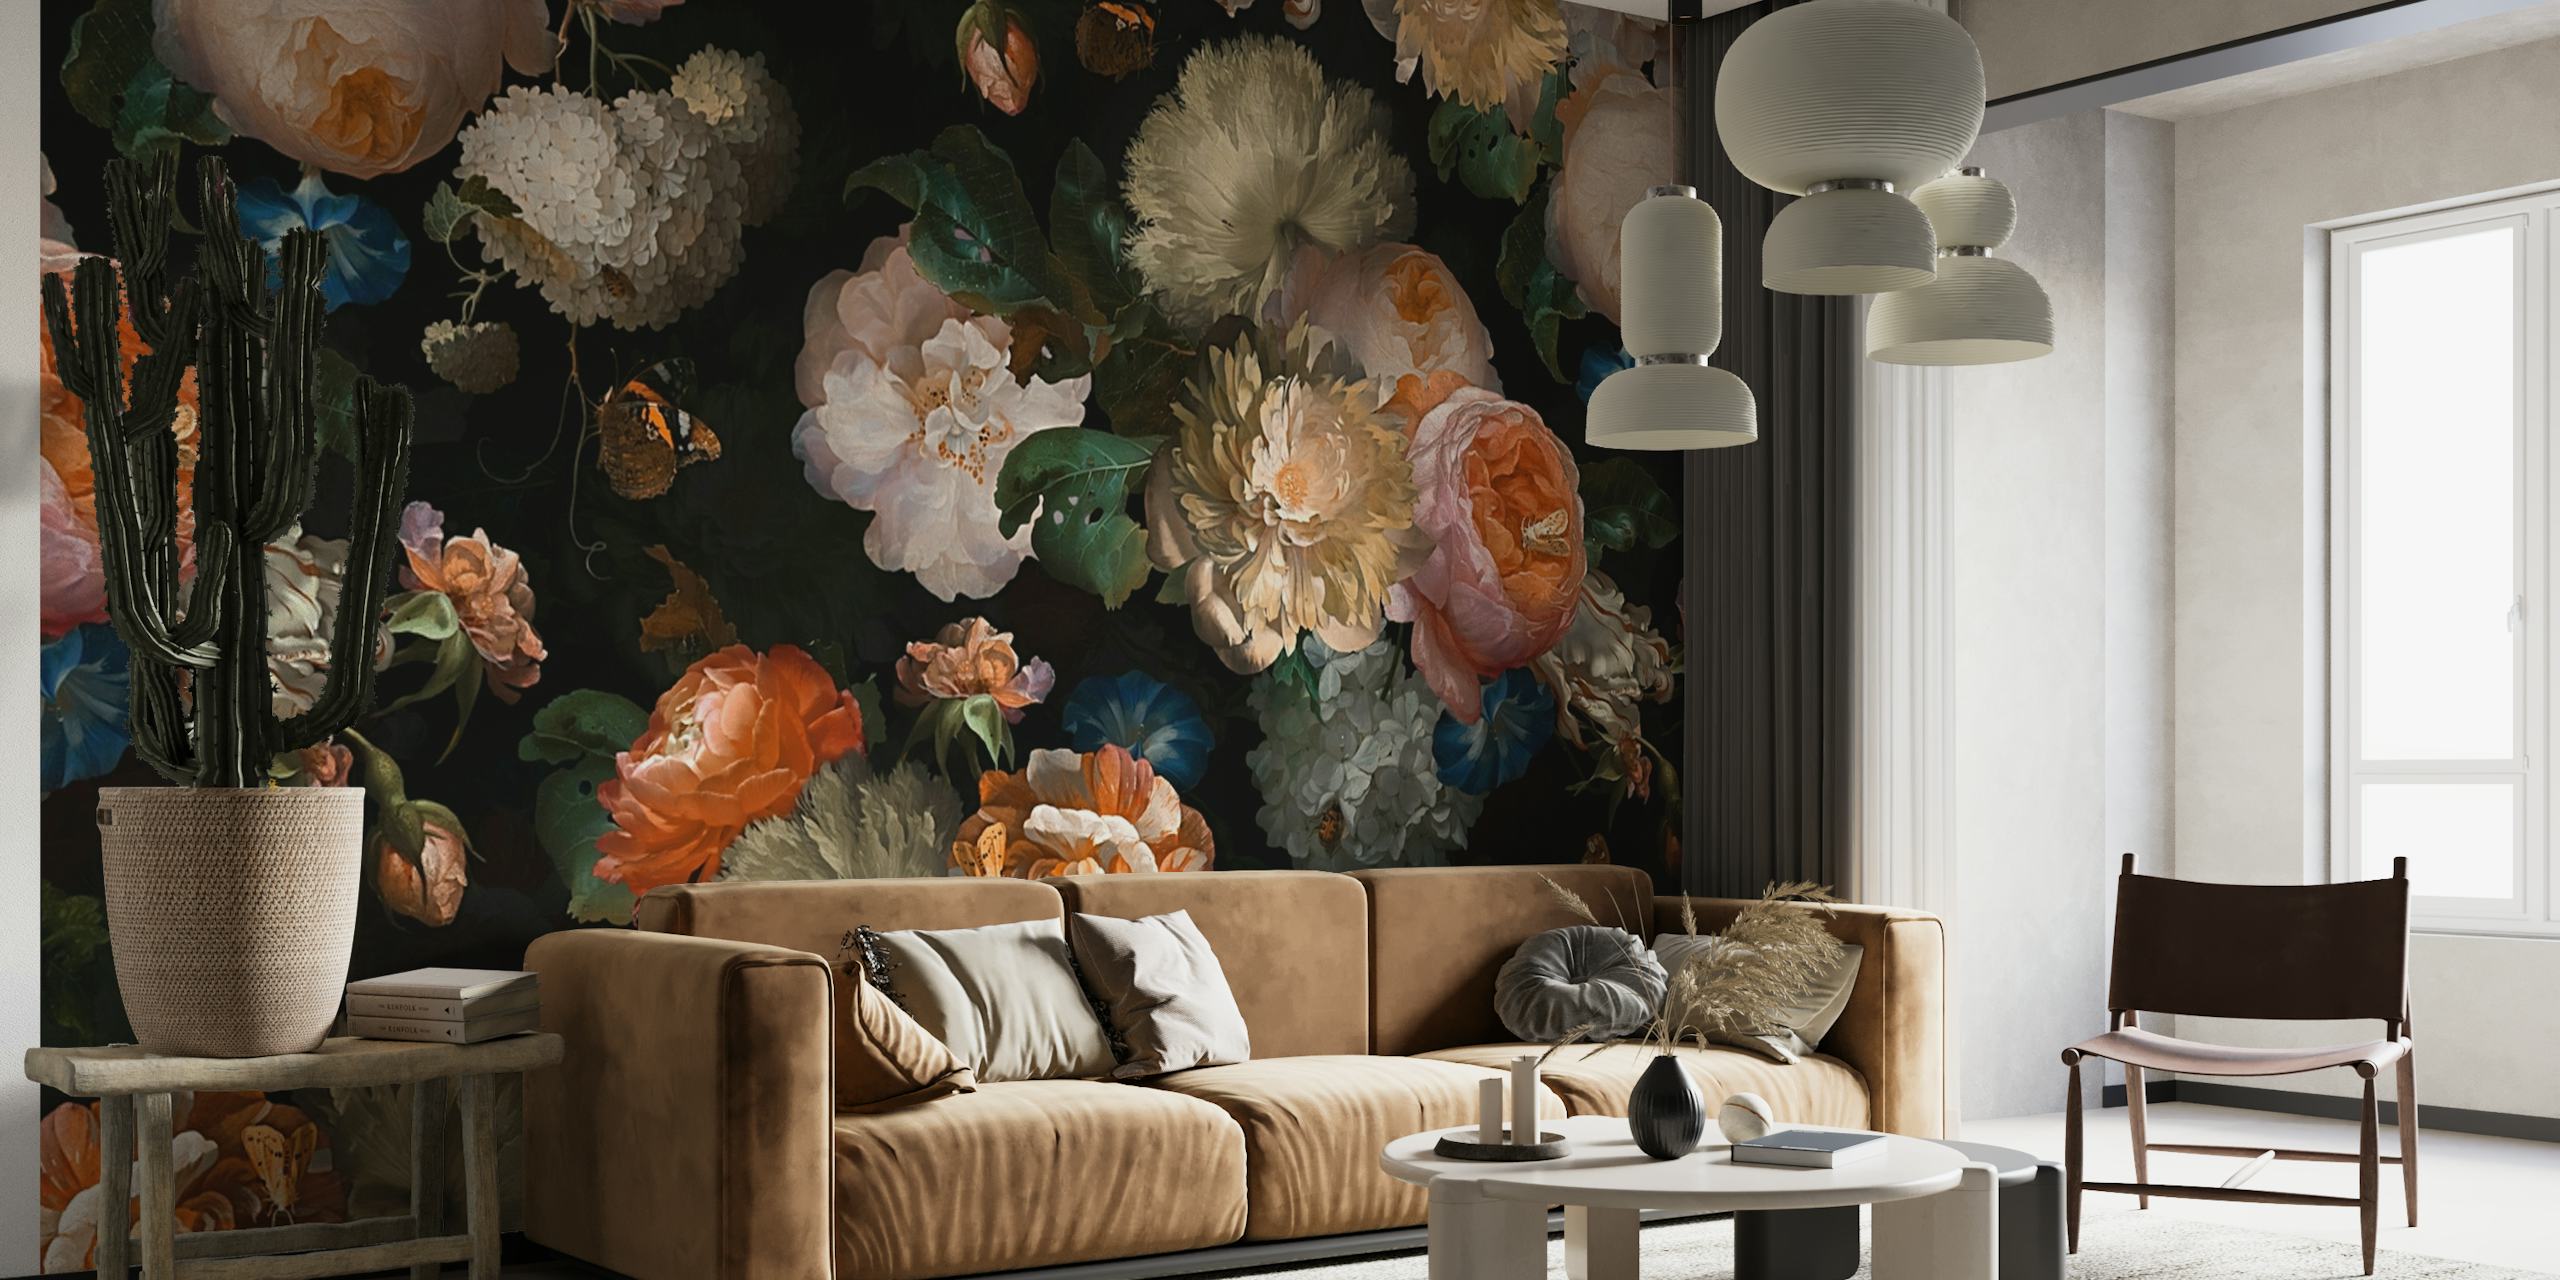 Raskošni zidni mural s cvjetnim motivima u baroknom stilu s tamnom pozadinom i vintage nijansama.